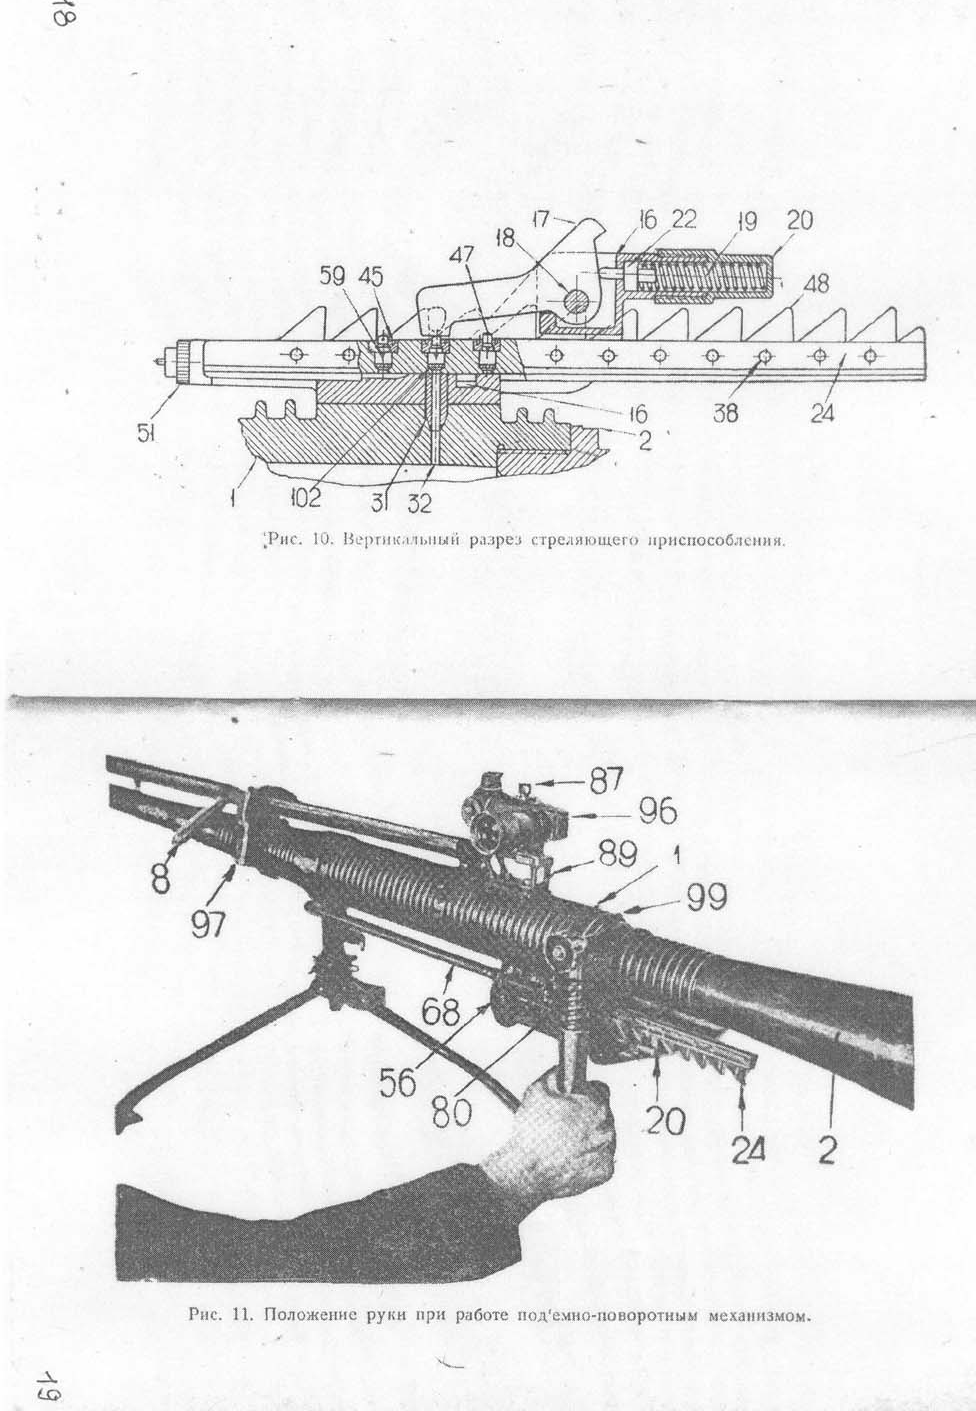 37-мм противотанковое ружье К. Краткое описание. 1934